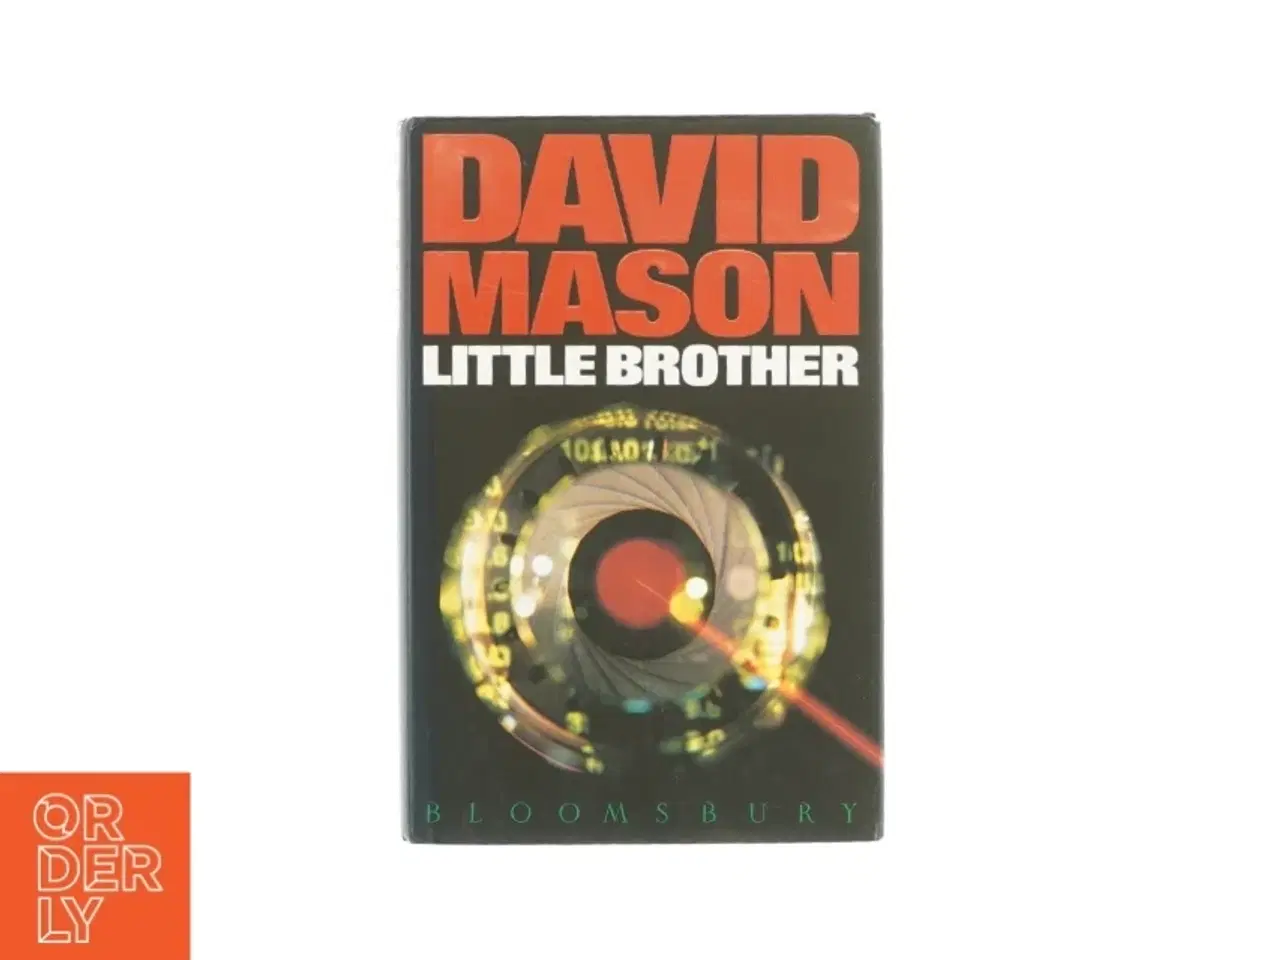 Billede 1 - Little brother af David Mason (bog)